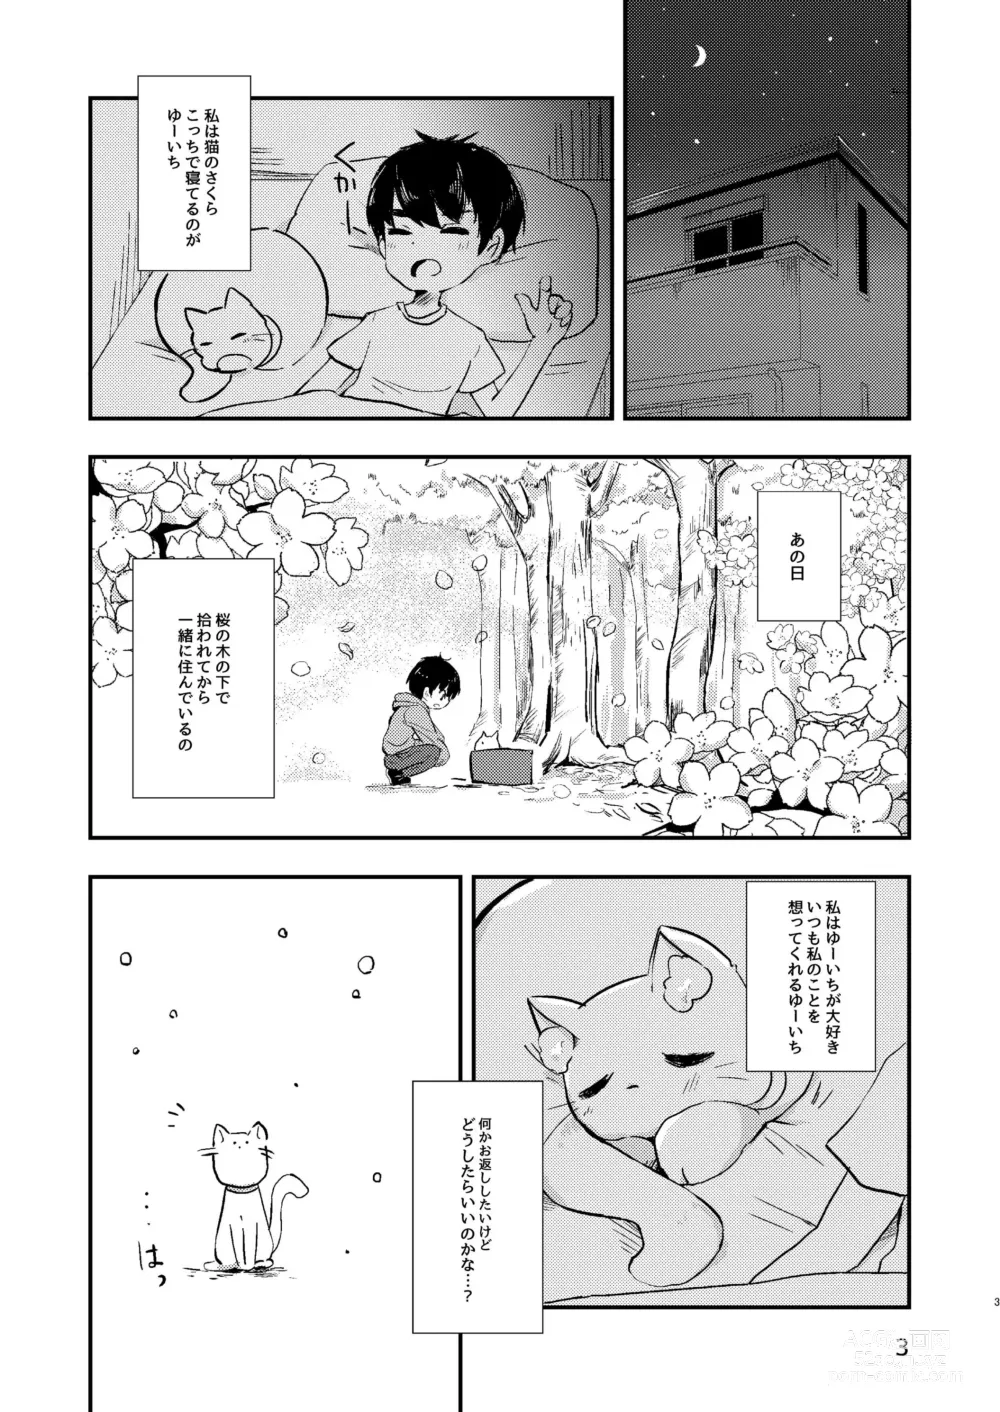 Page 2 of doujinshi Ongaeshi no Neko